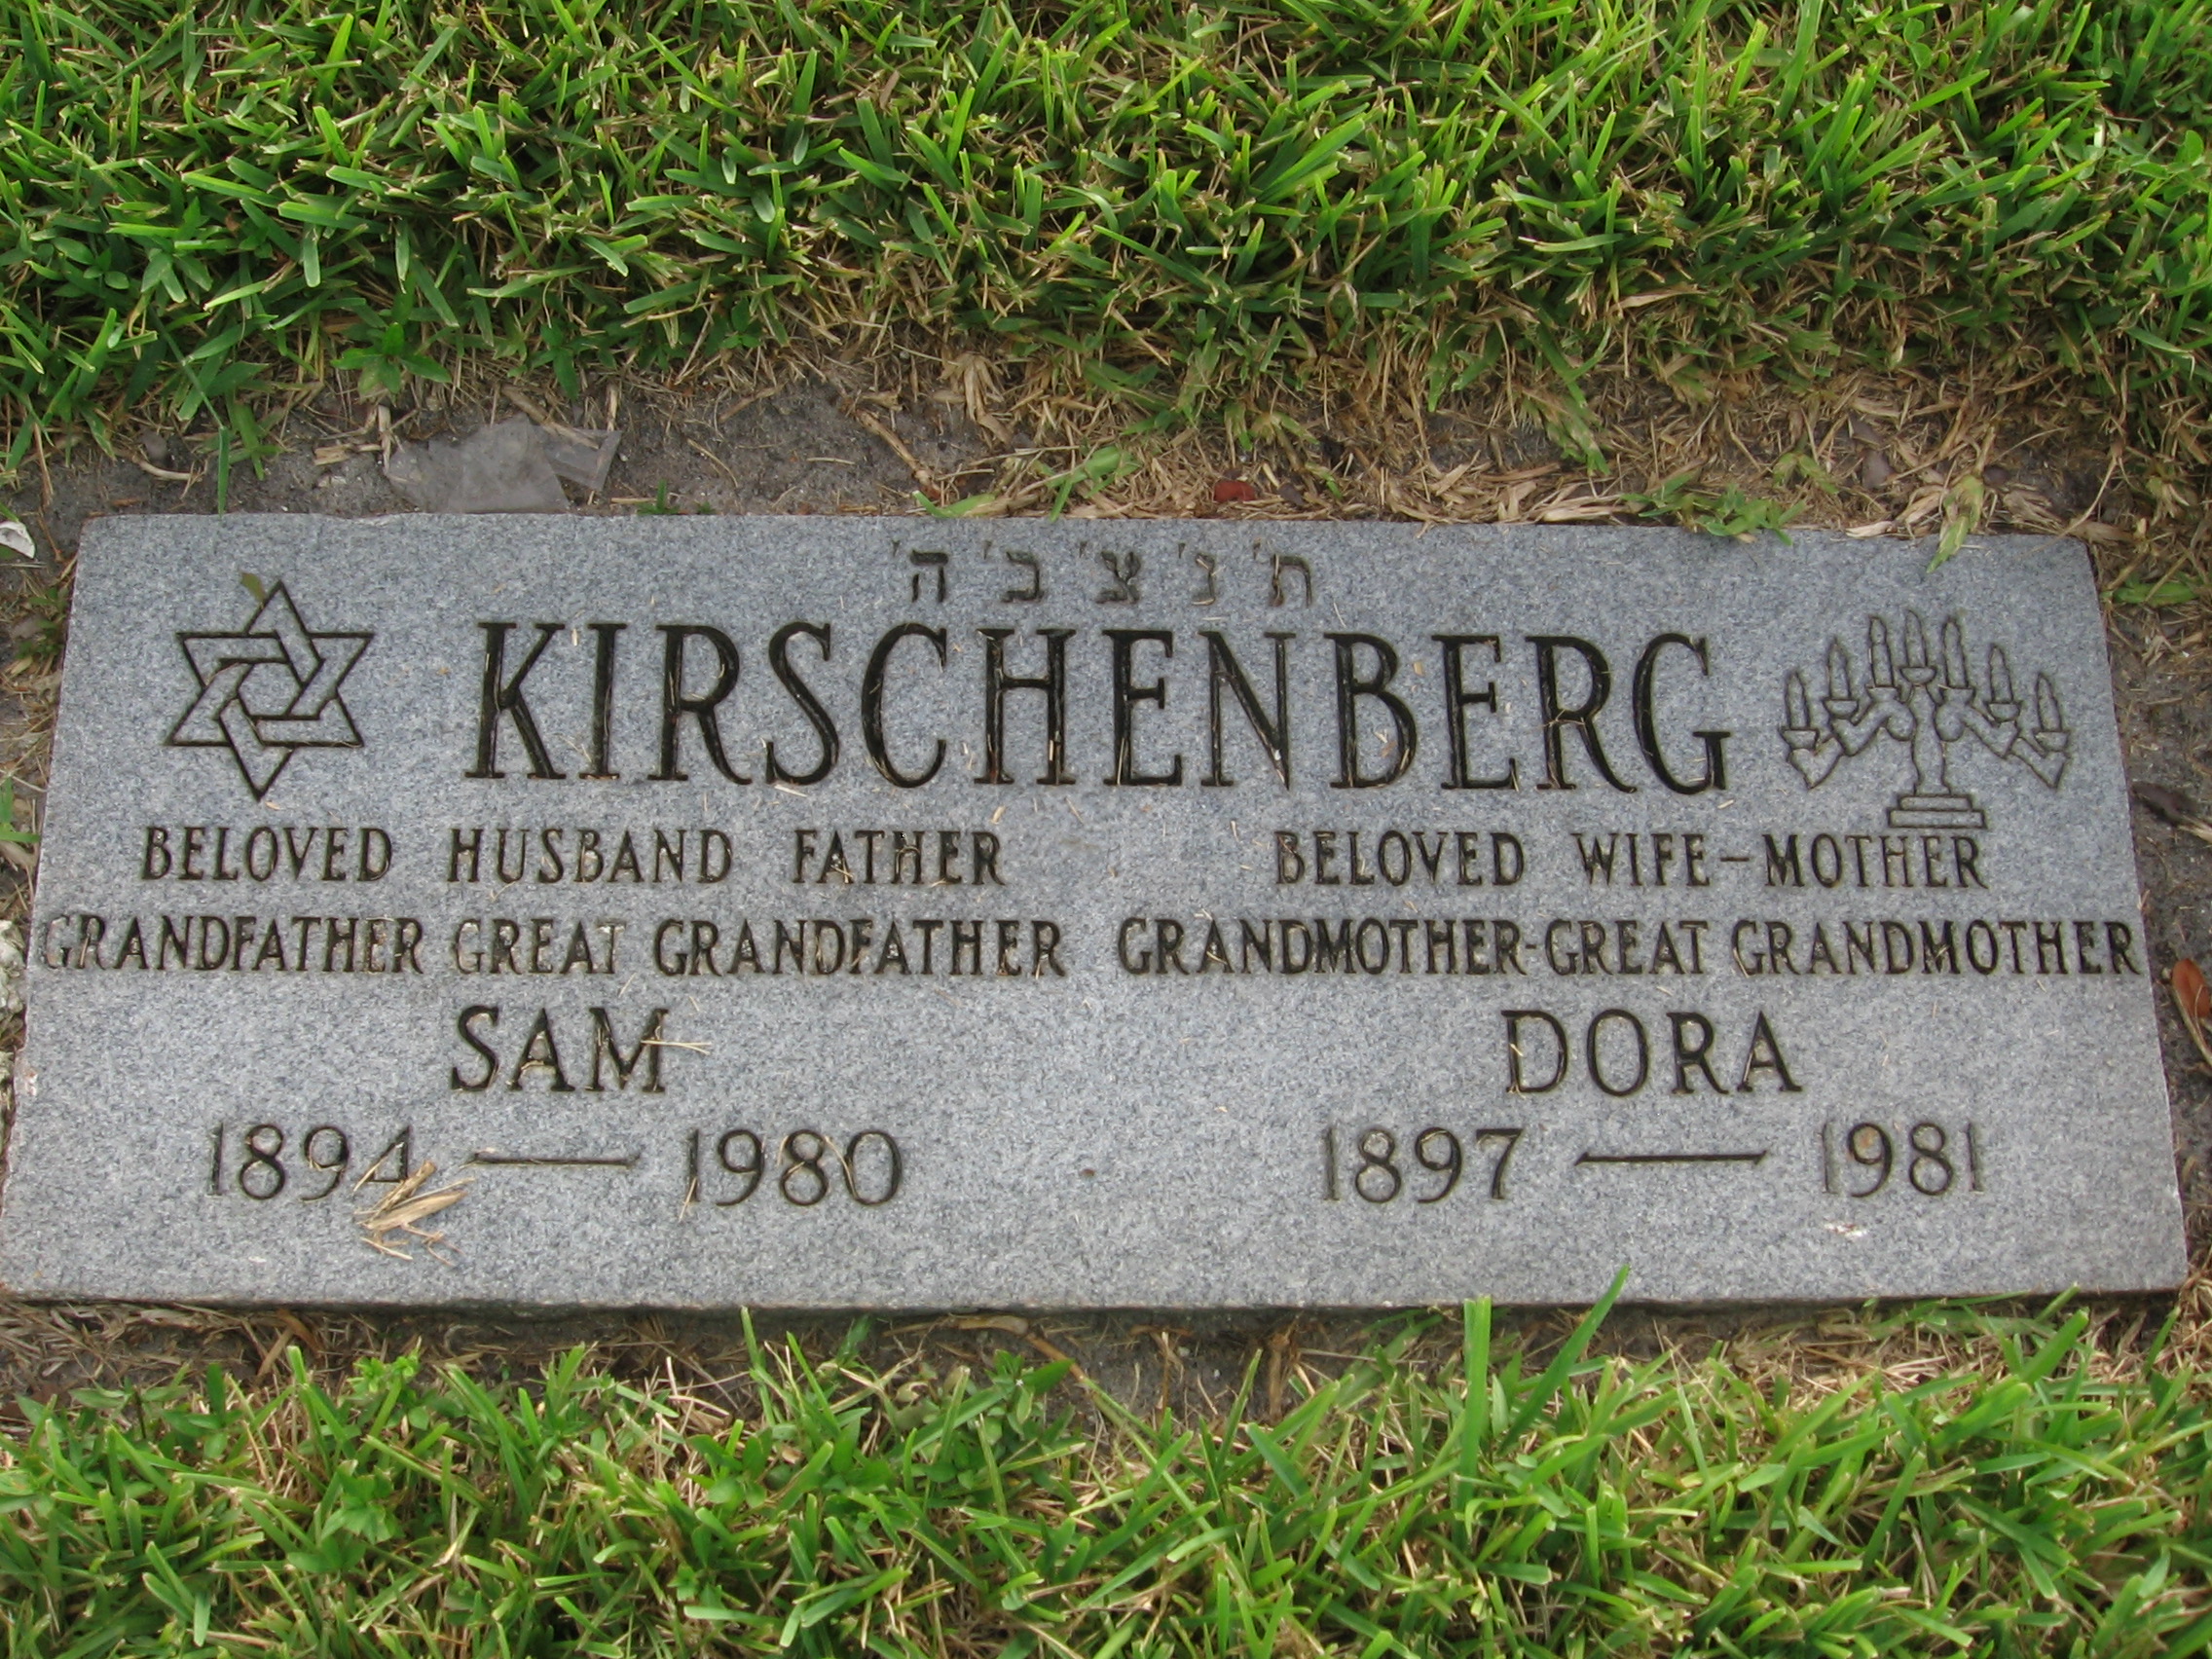 Sam Kirschenberg